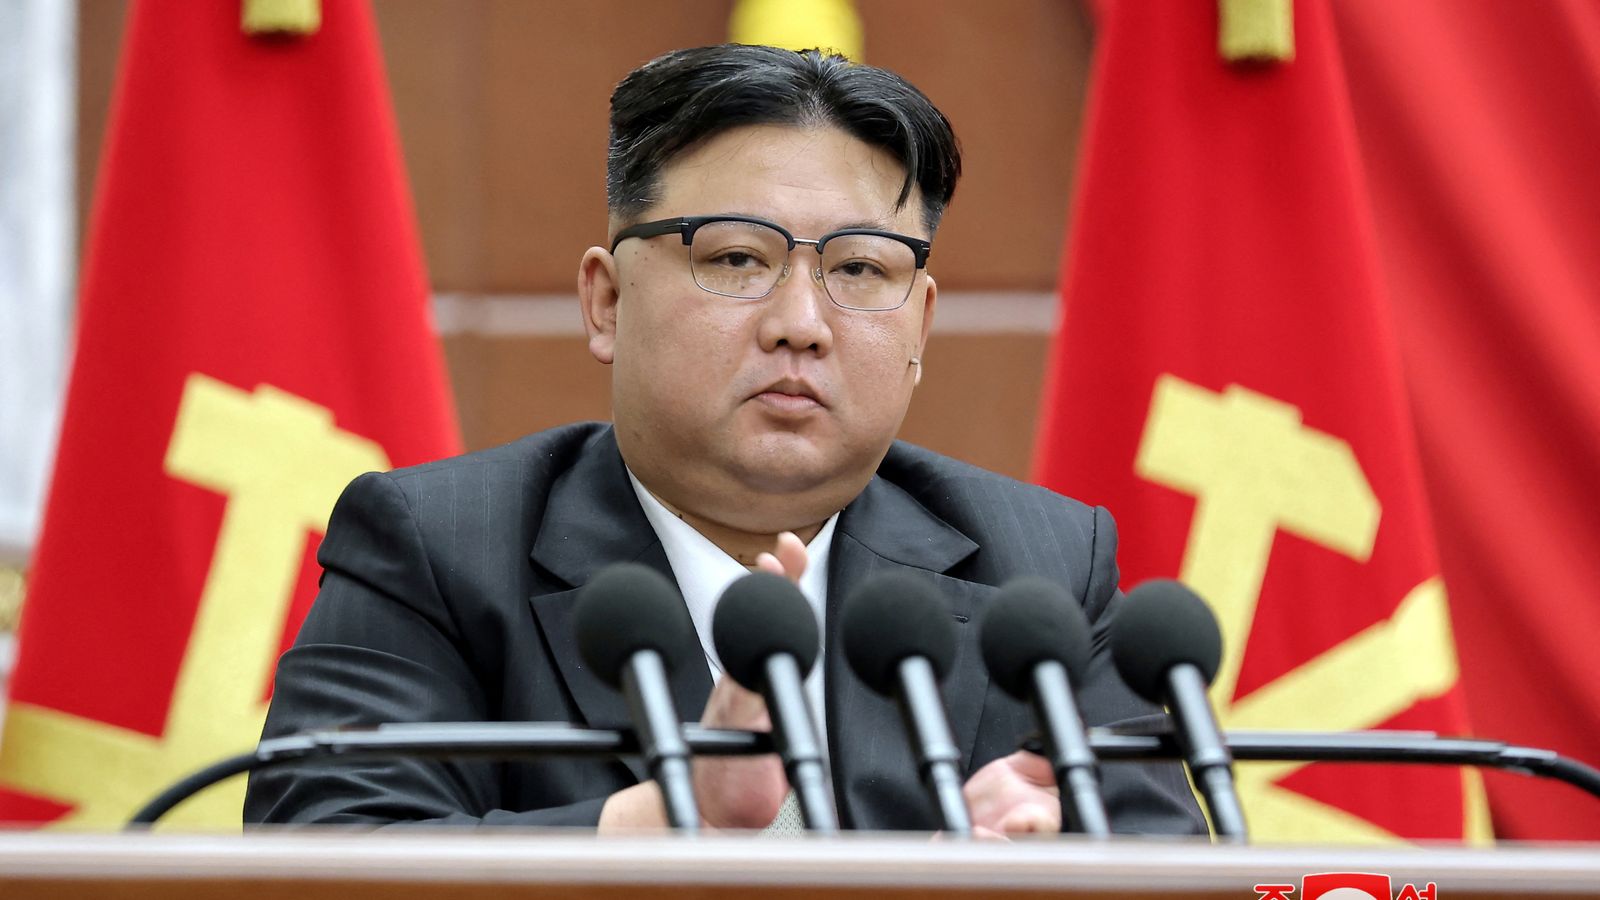 Според Корейската централна новинарска агенция (KCNA), той каза: Тежката ситуация